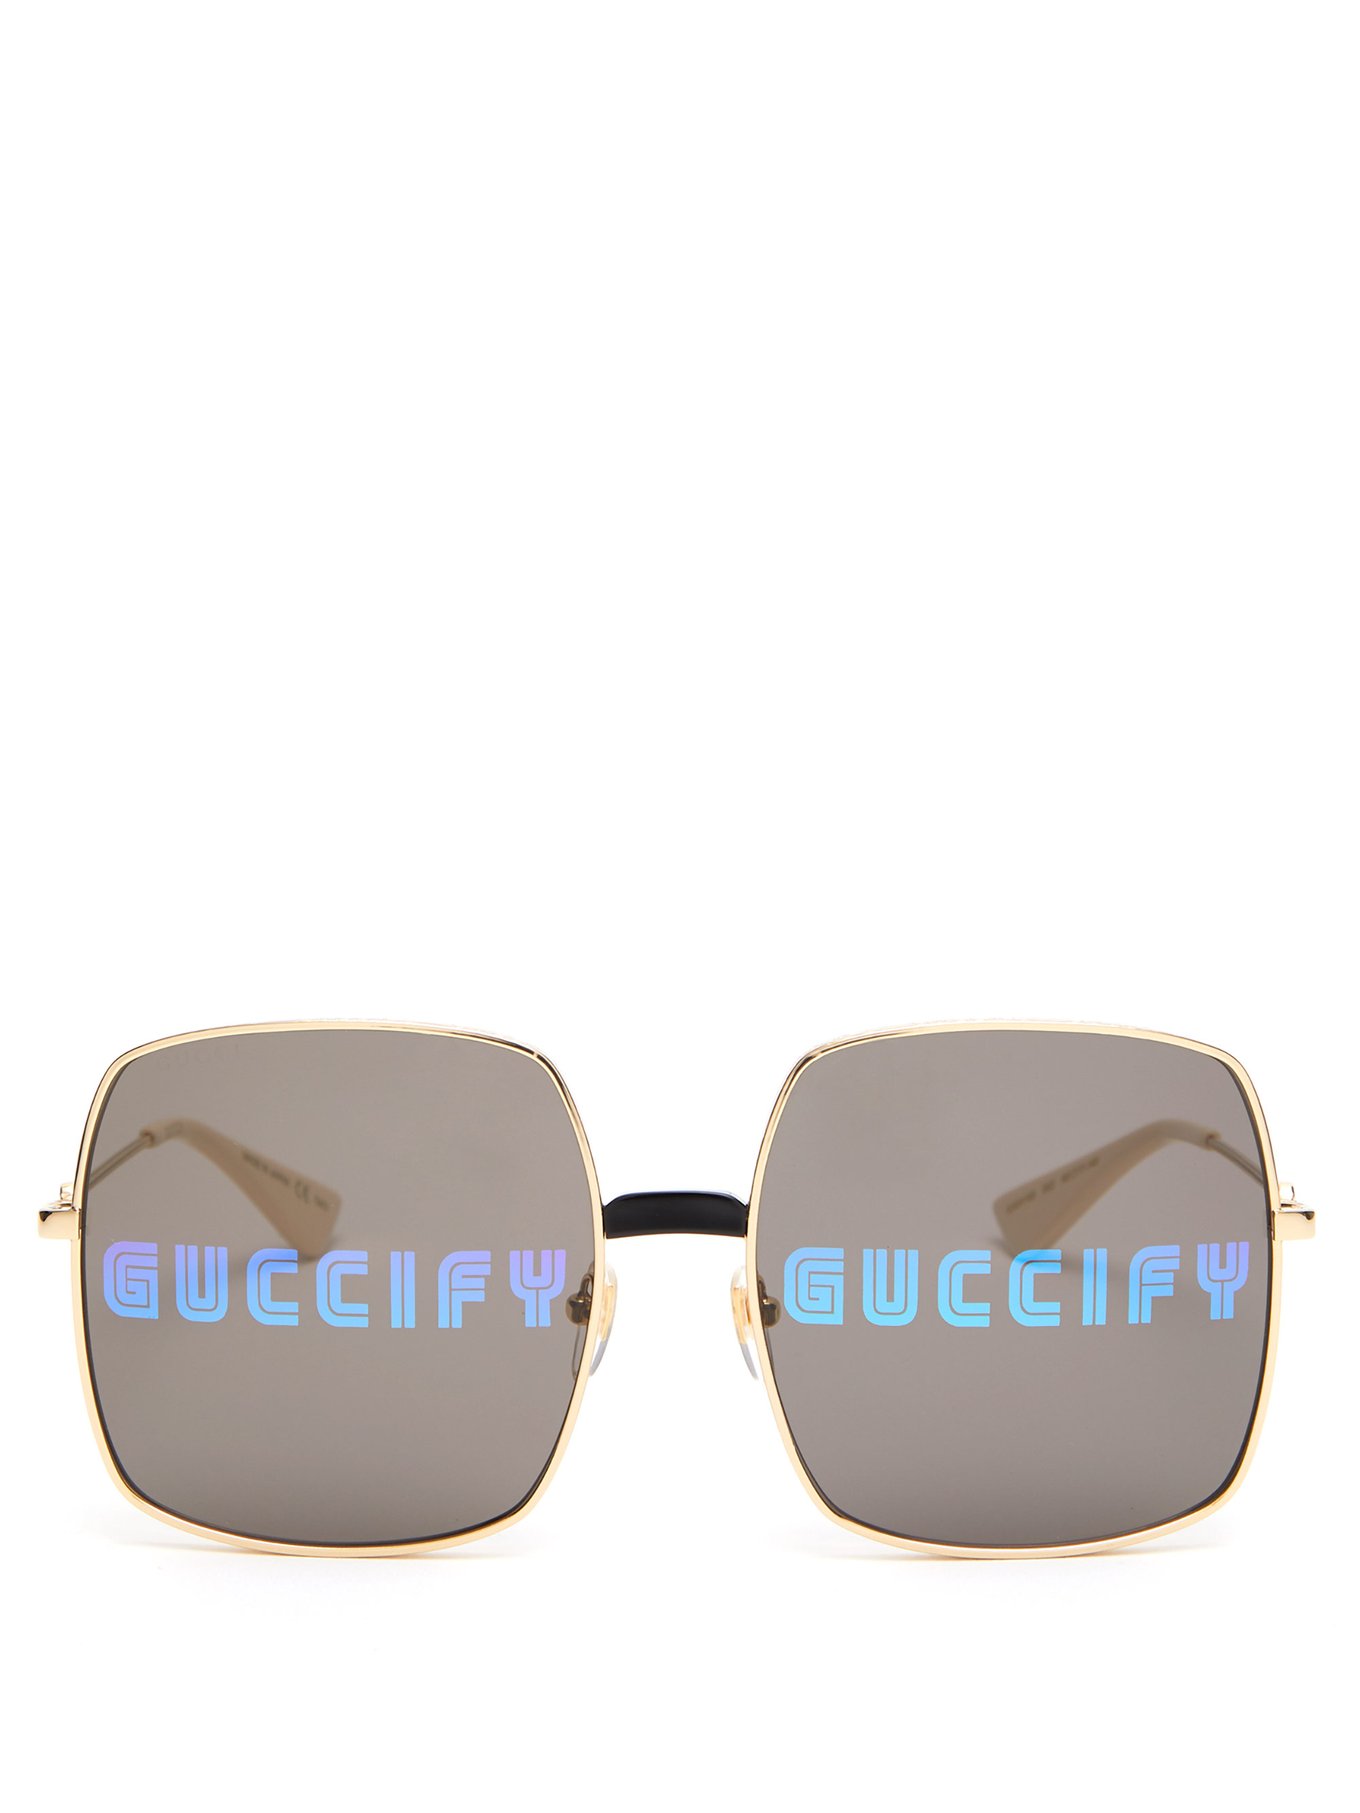 Guccify square metal sunglasses 